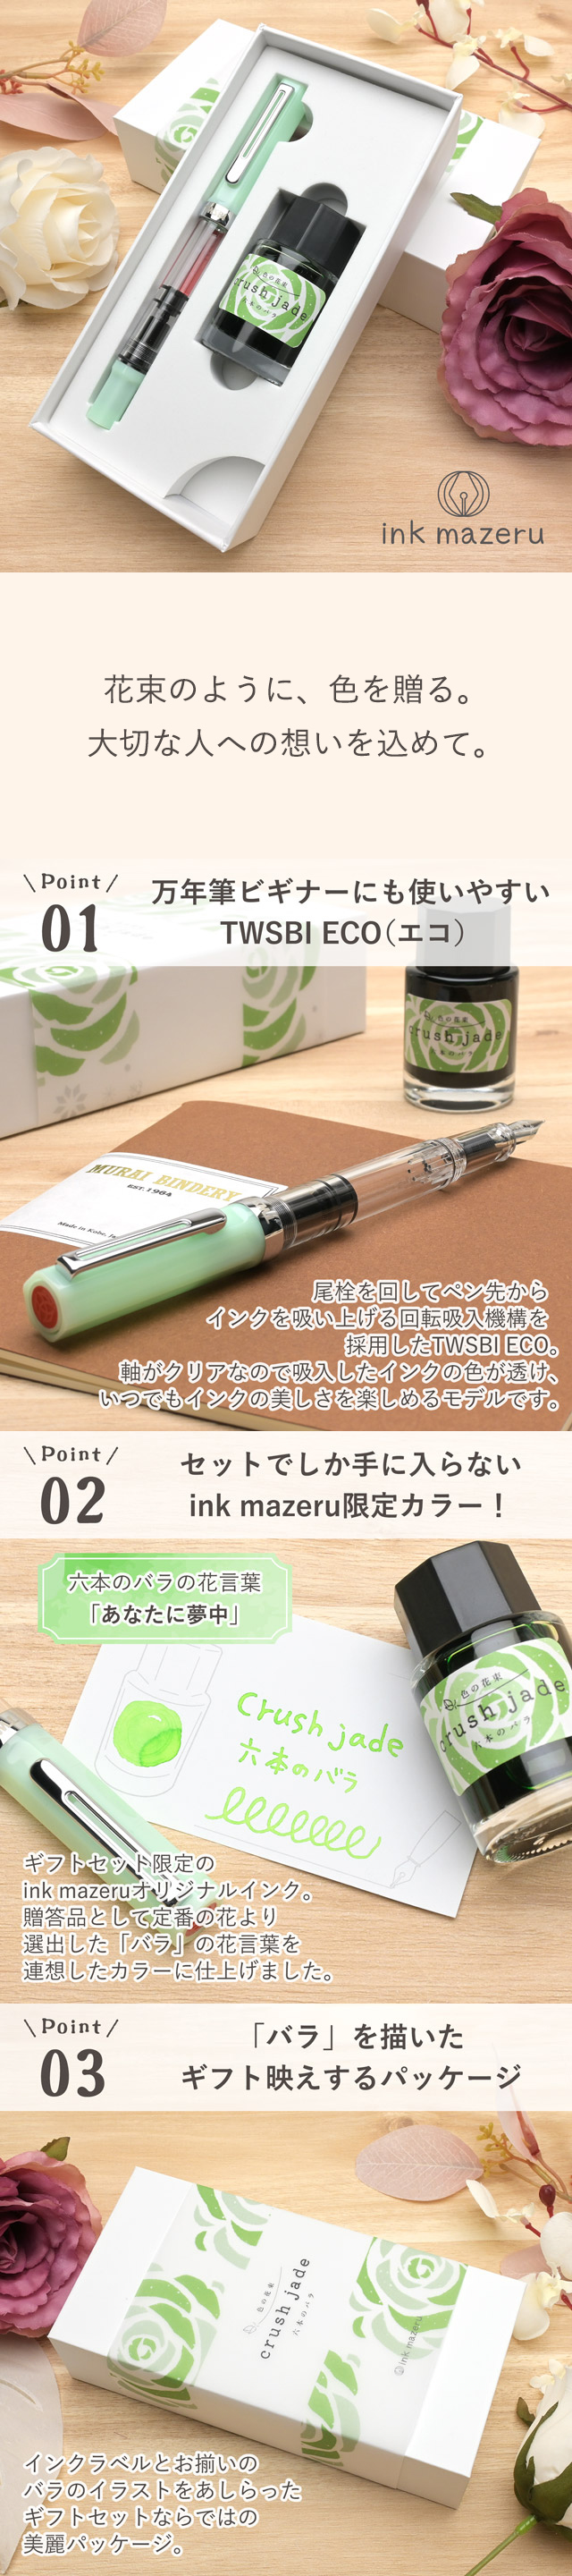 ink mazeru（インクマゼル）万年筆 ボトルインク ギフトセット crush jade～六本のバラ～ INK40010